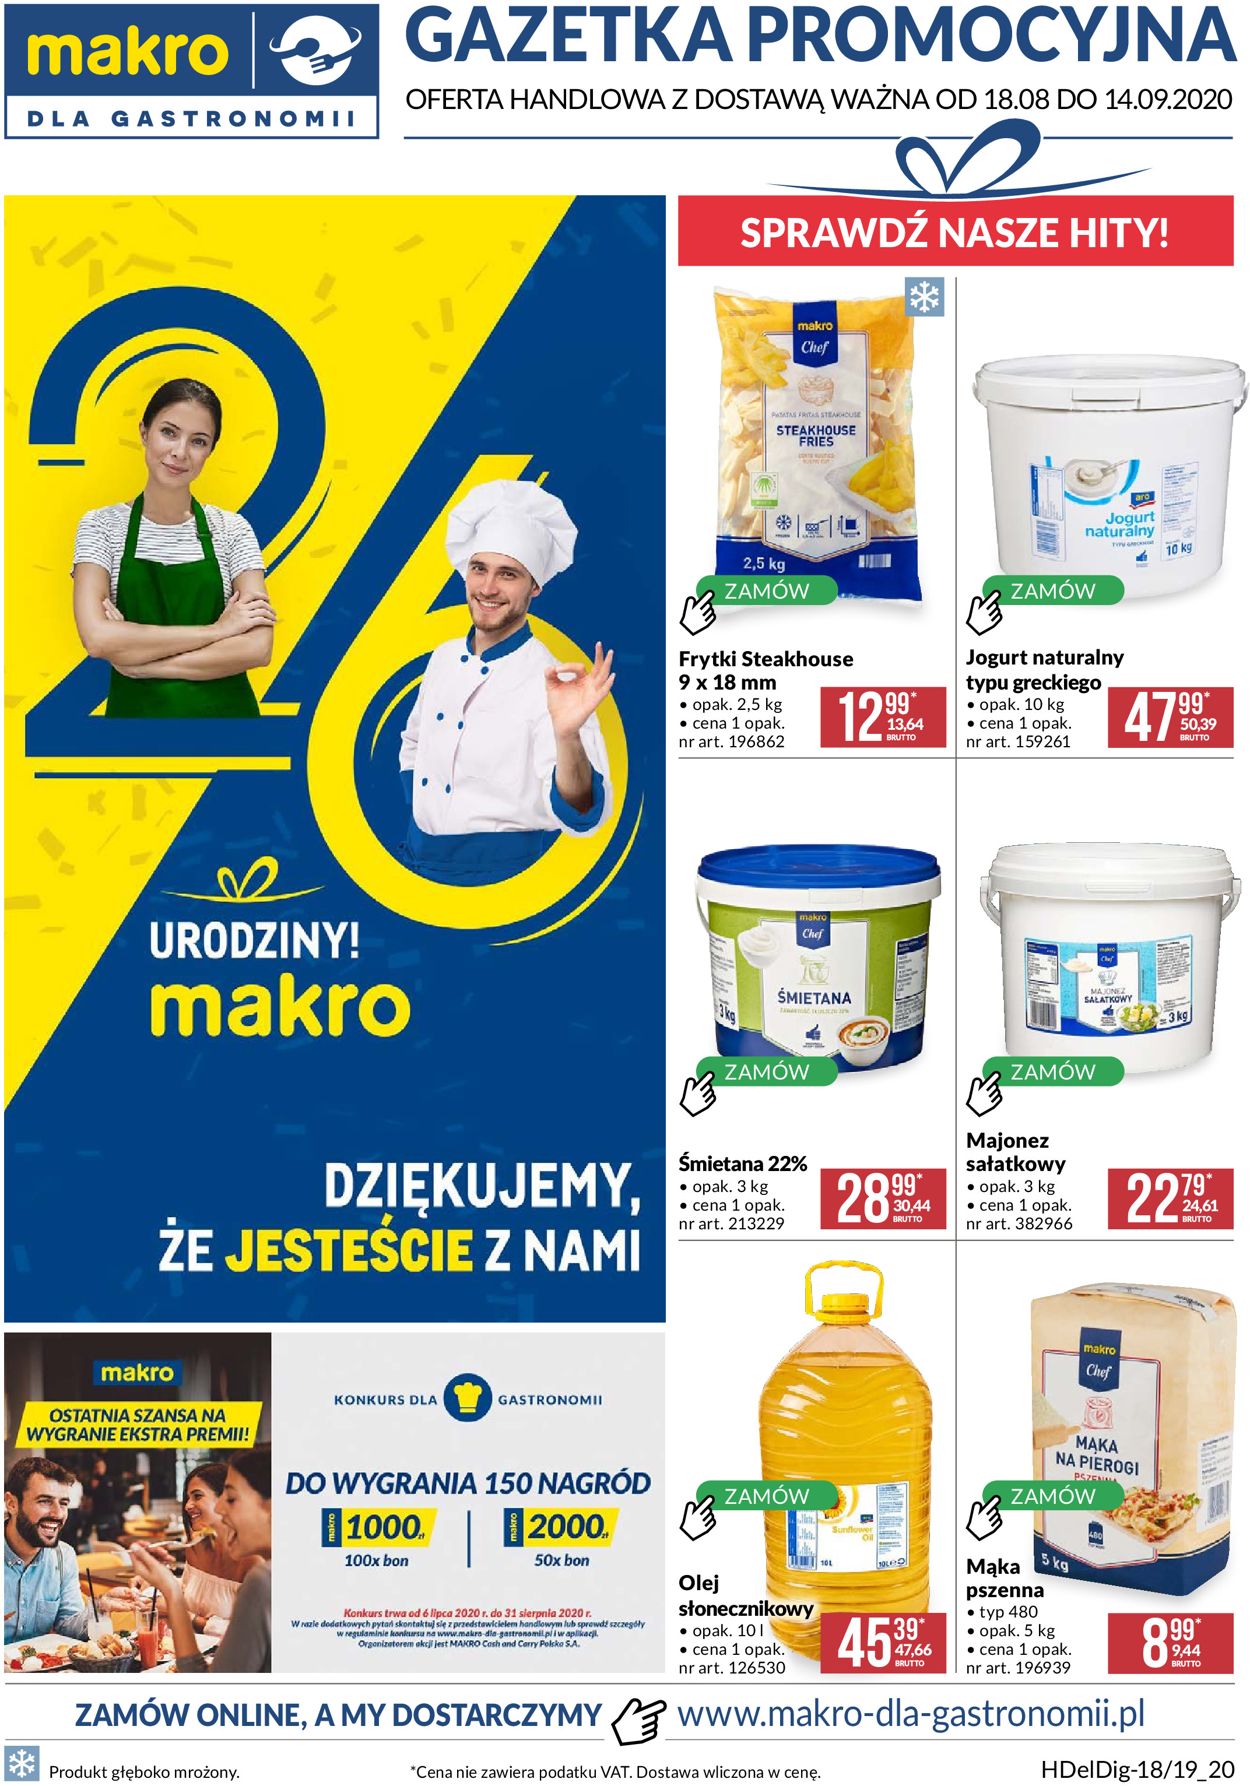 Gazetka promocyjna Makro - 18.08-14.09.2020